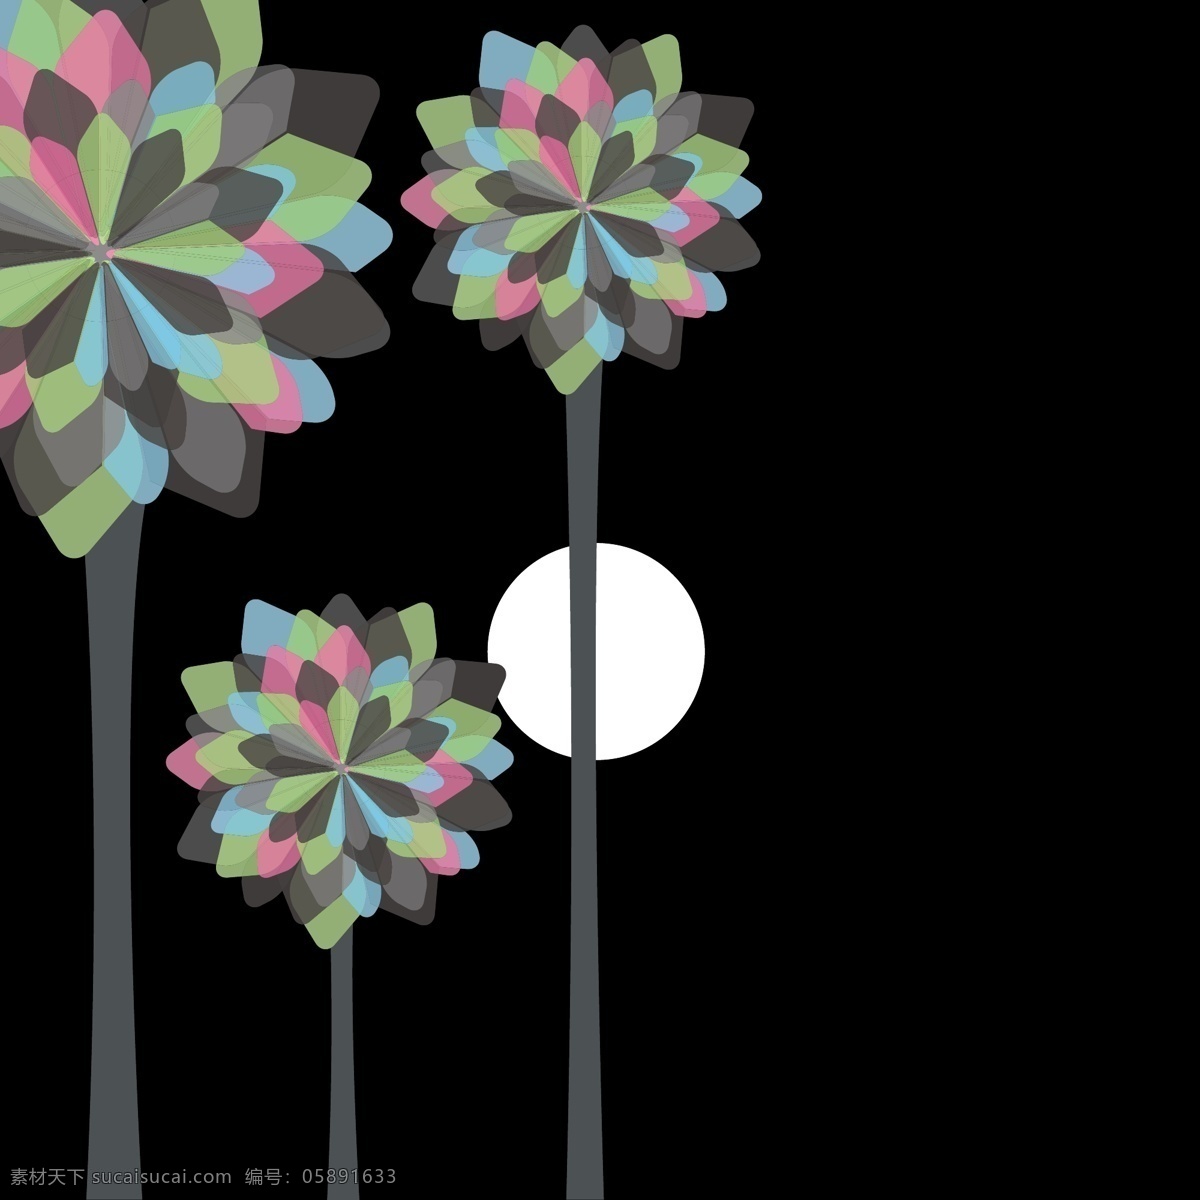 手绘风车树 装饰 植物 花朵素材 背景 花卉 手绘风格 花卉植物 花草素材 手绘 花草树木 生物世界 矢量素材 黑色